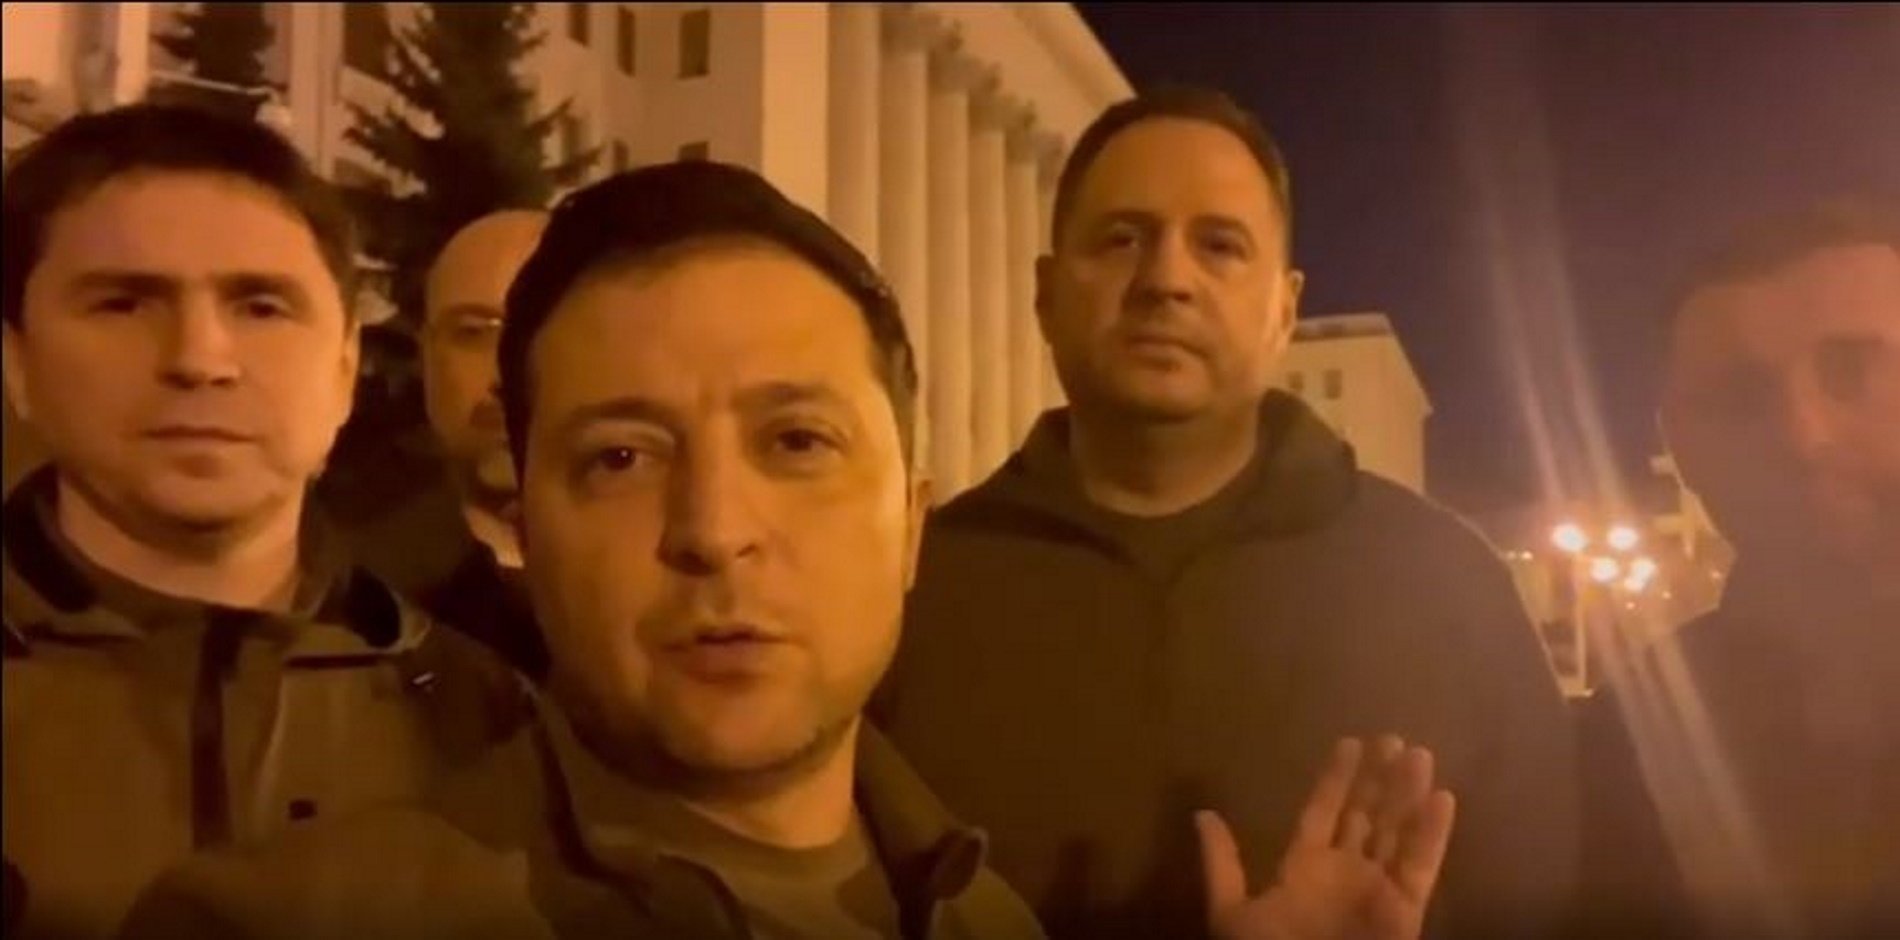 Guerra Rússia-Ucraïna: Zelenski demostra que continua a Ucraïna amb un video